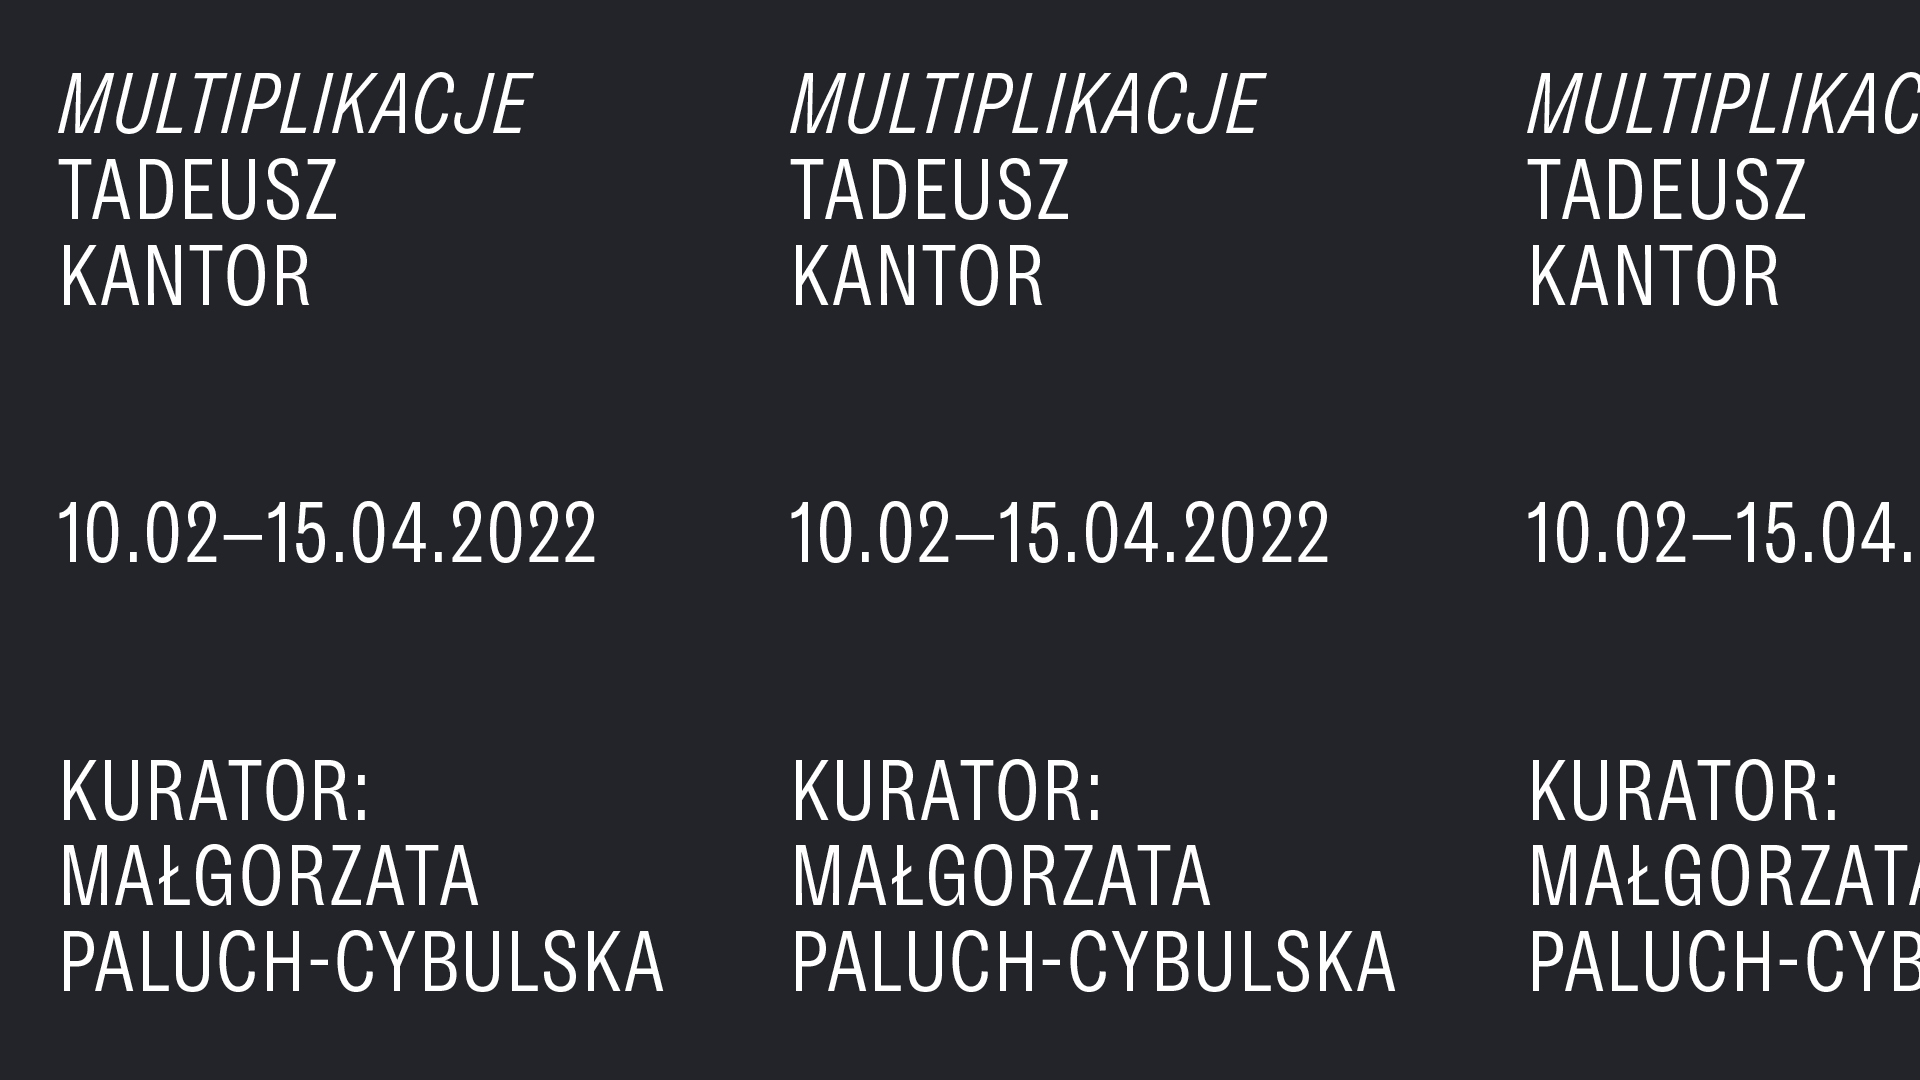 Grafika z powielonym napisem: Multiplikacje Tadeusz Kantor